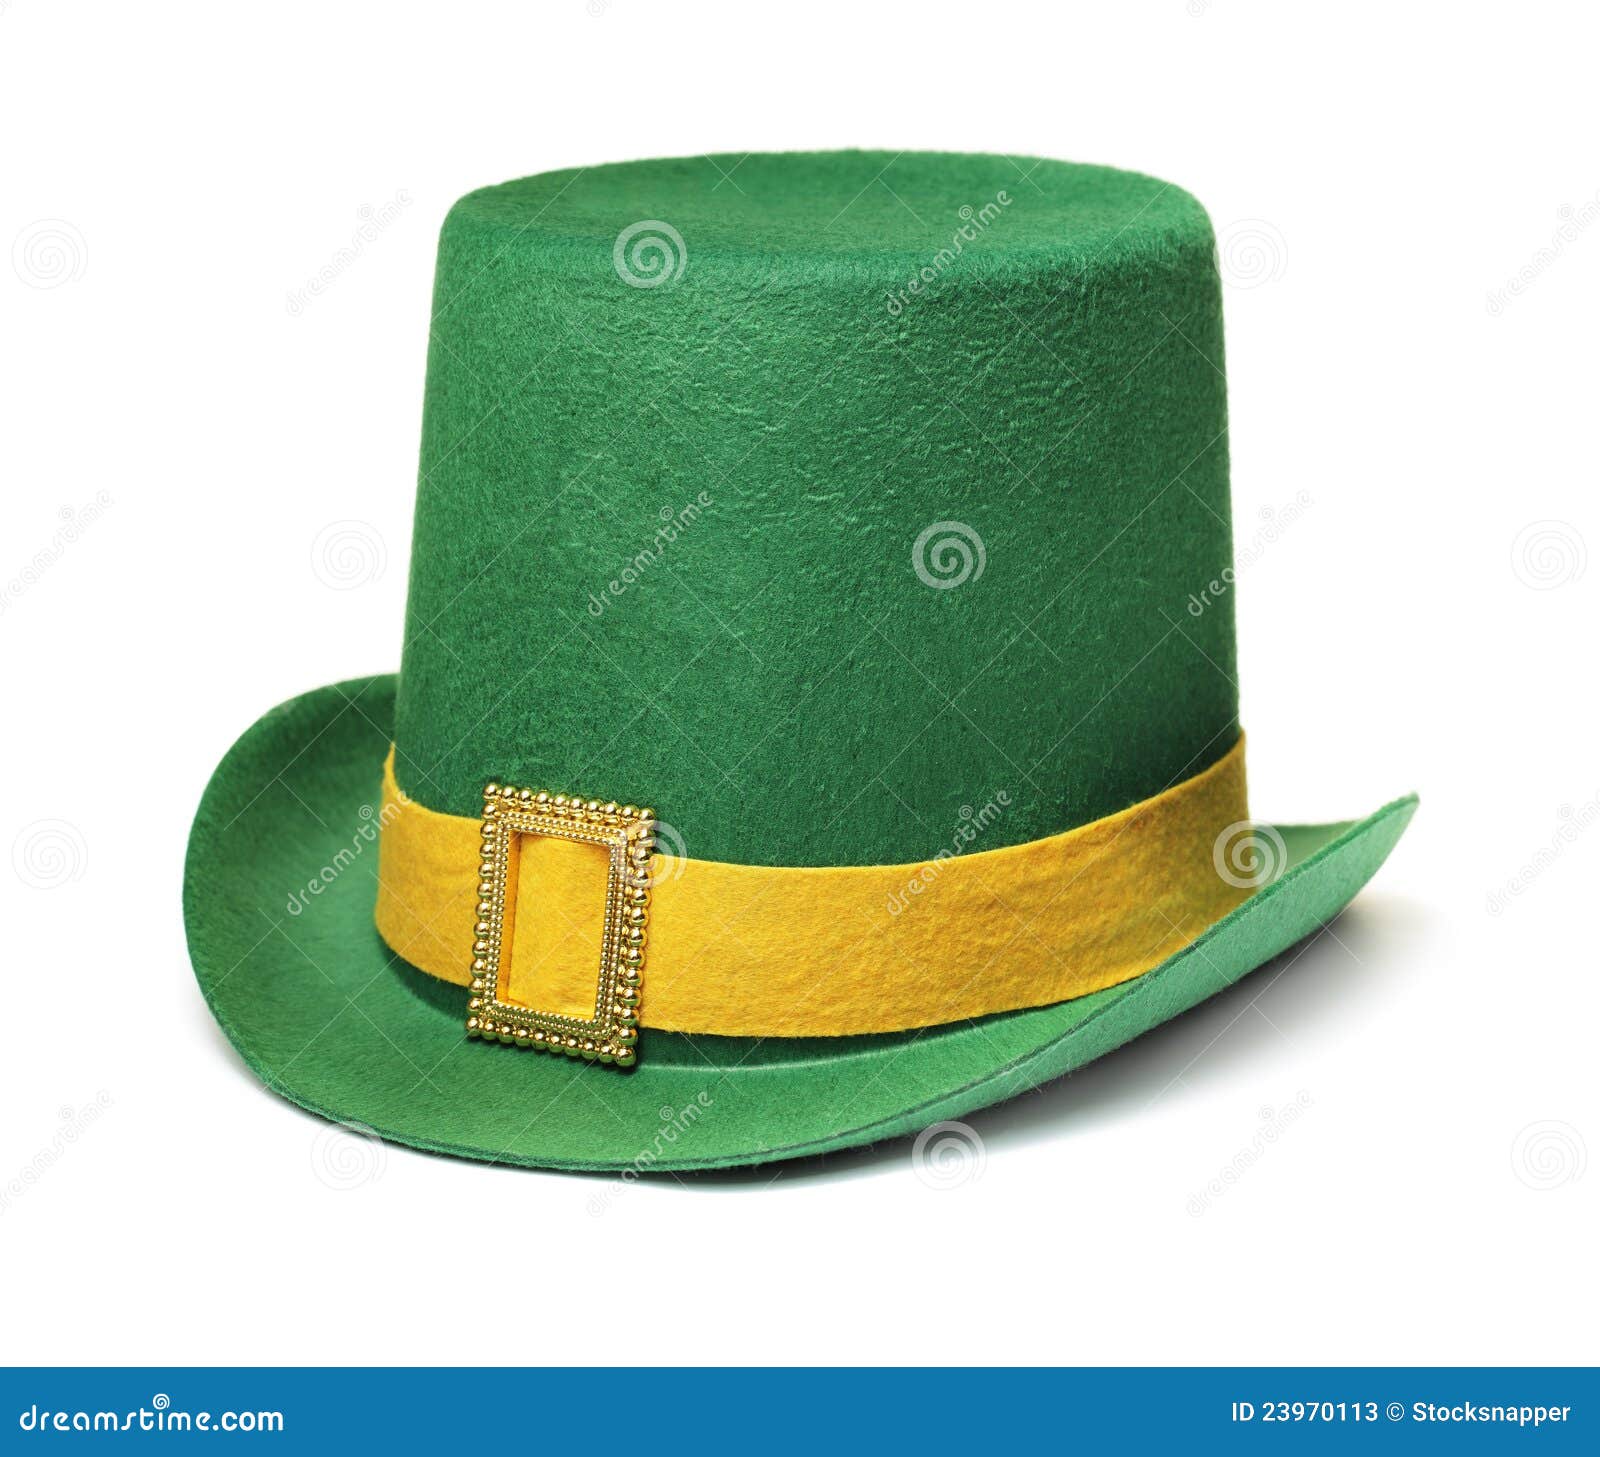 πράσινο καπέλο. καρναβαλιού φτηνό εύθυμο ημέρας λευκό του ST σκιών του Πάτρικ s καπέλων φυσικό